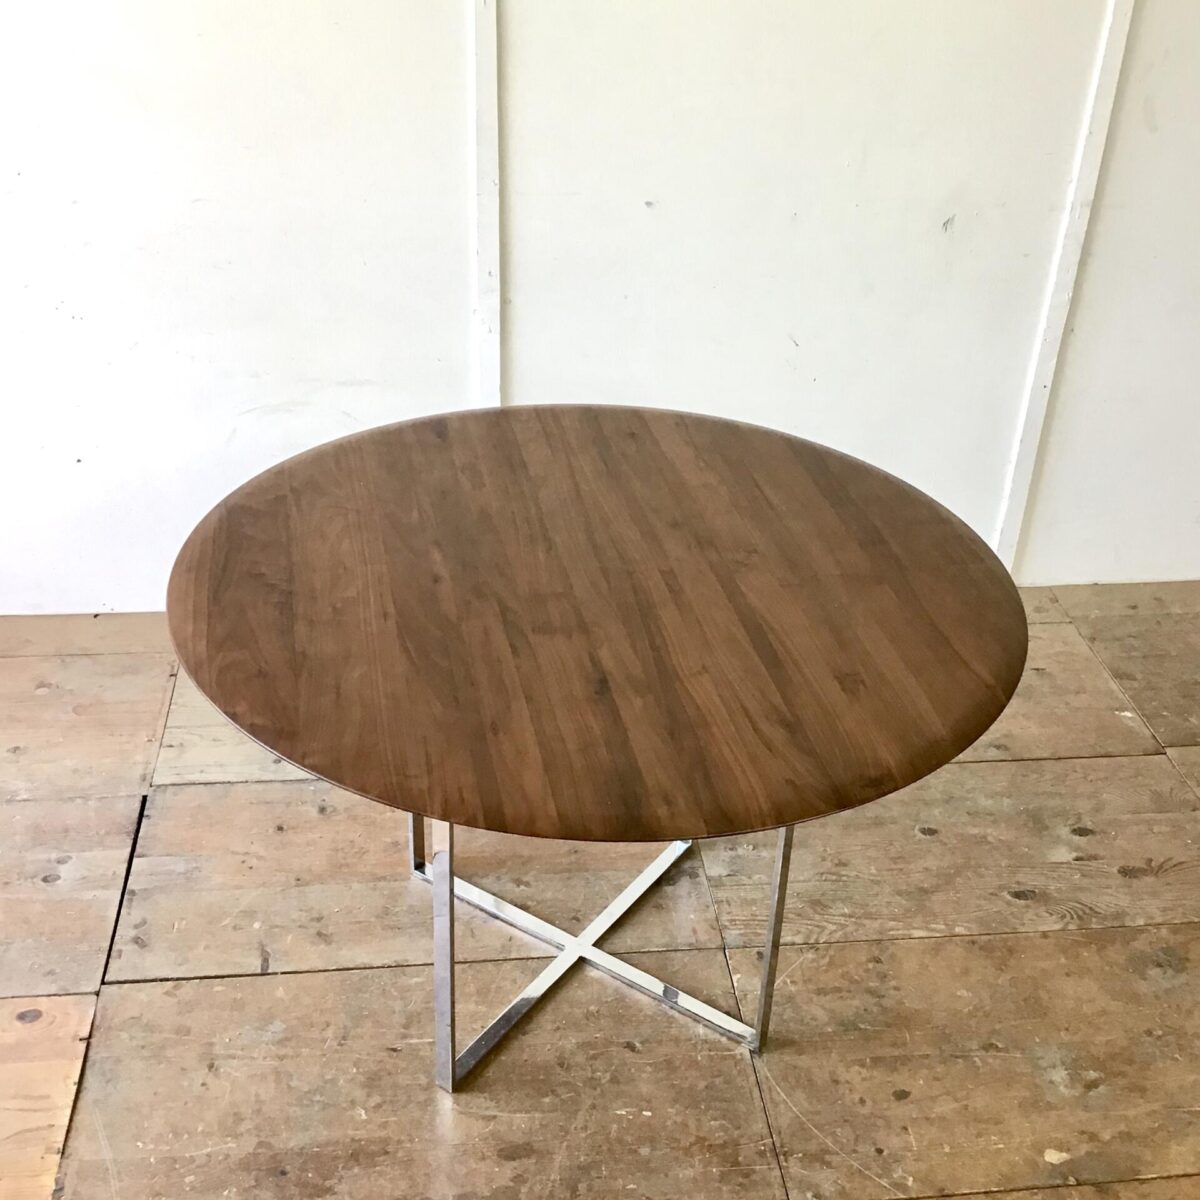 Runder Tisch Durchmesser 120cm Höhe 74cm. Das Tischblatt ist aus Nussbaum Vollholz, Kanten schön abgerundet. Tischfuss Metall verchromt kann liegend auch als Salontisch verwendet werden höhe 54cm.